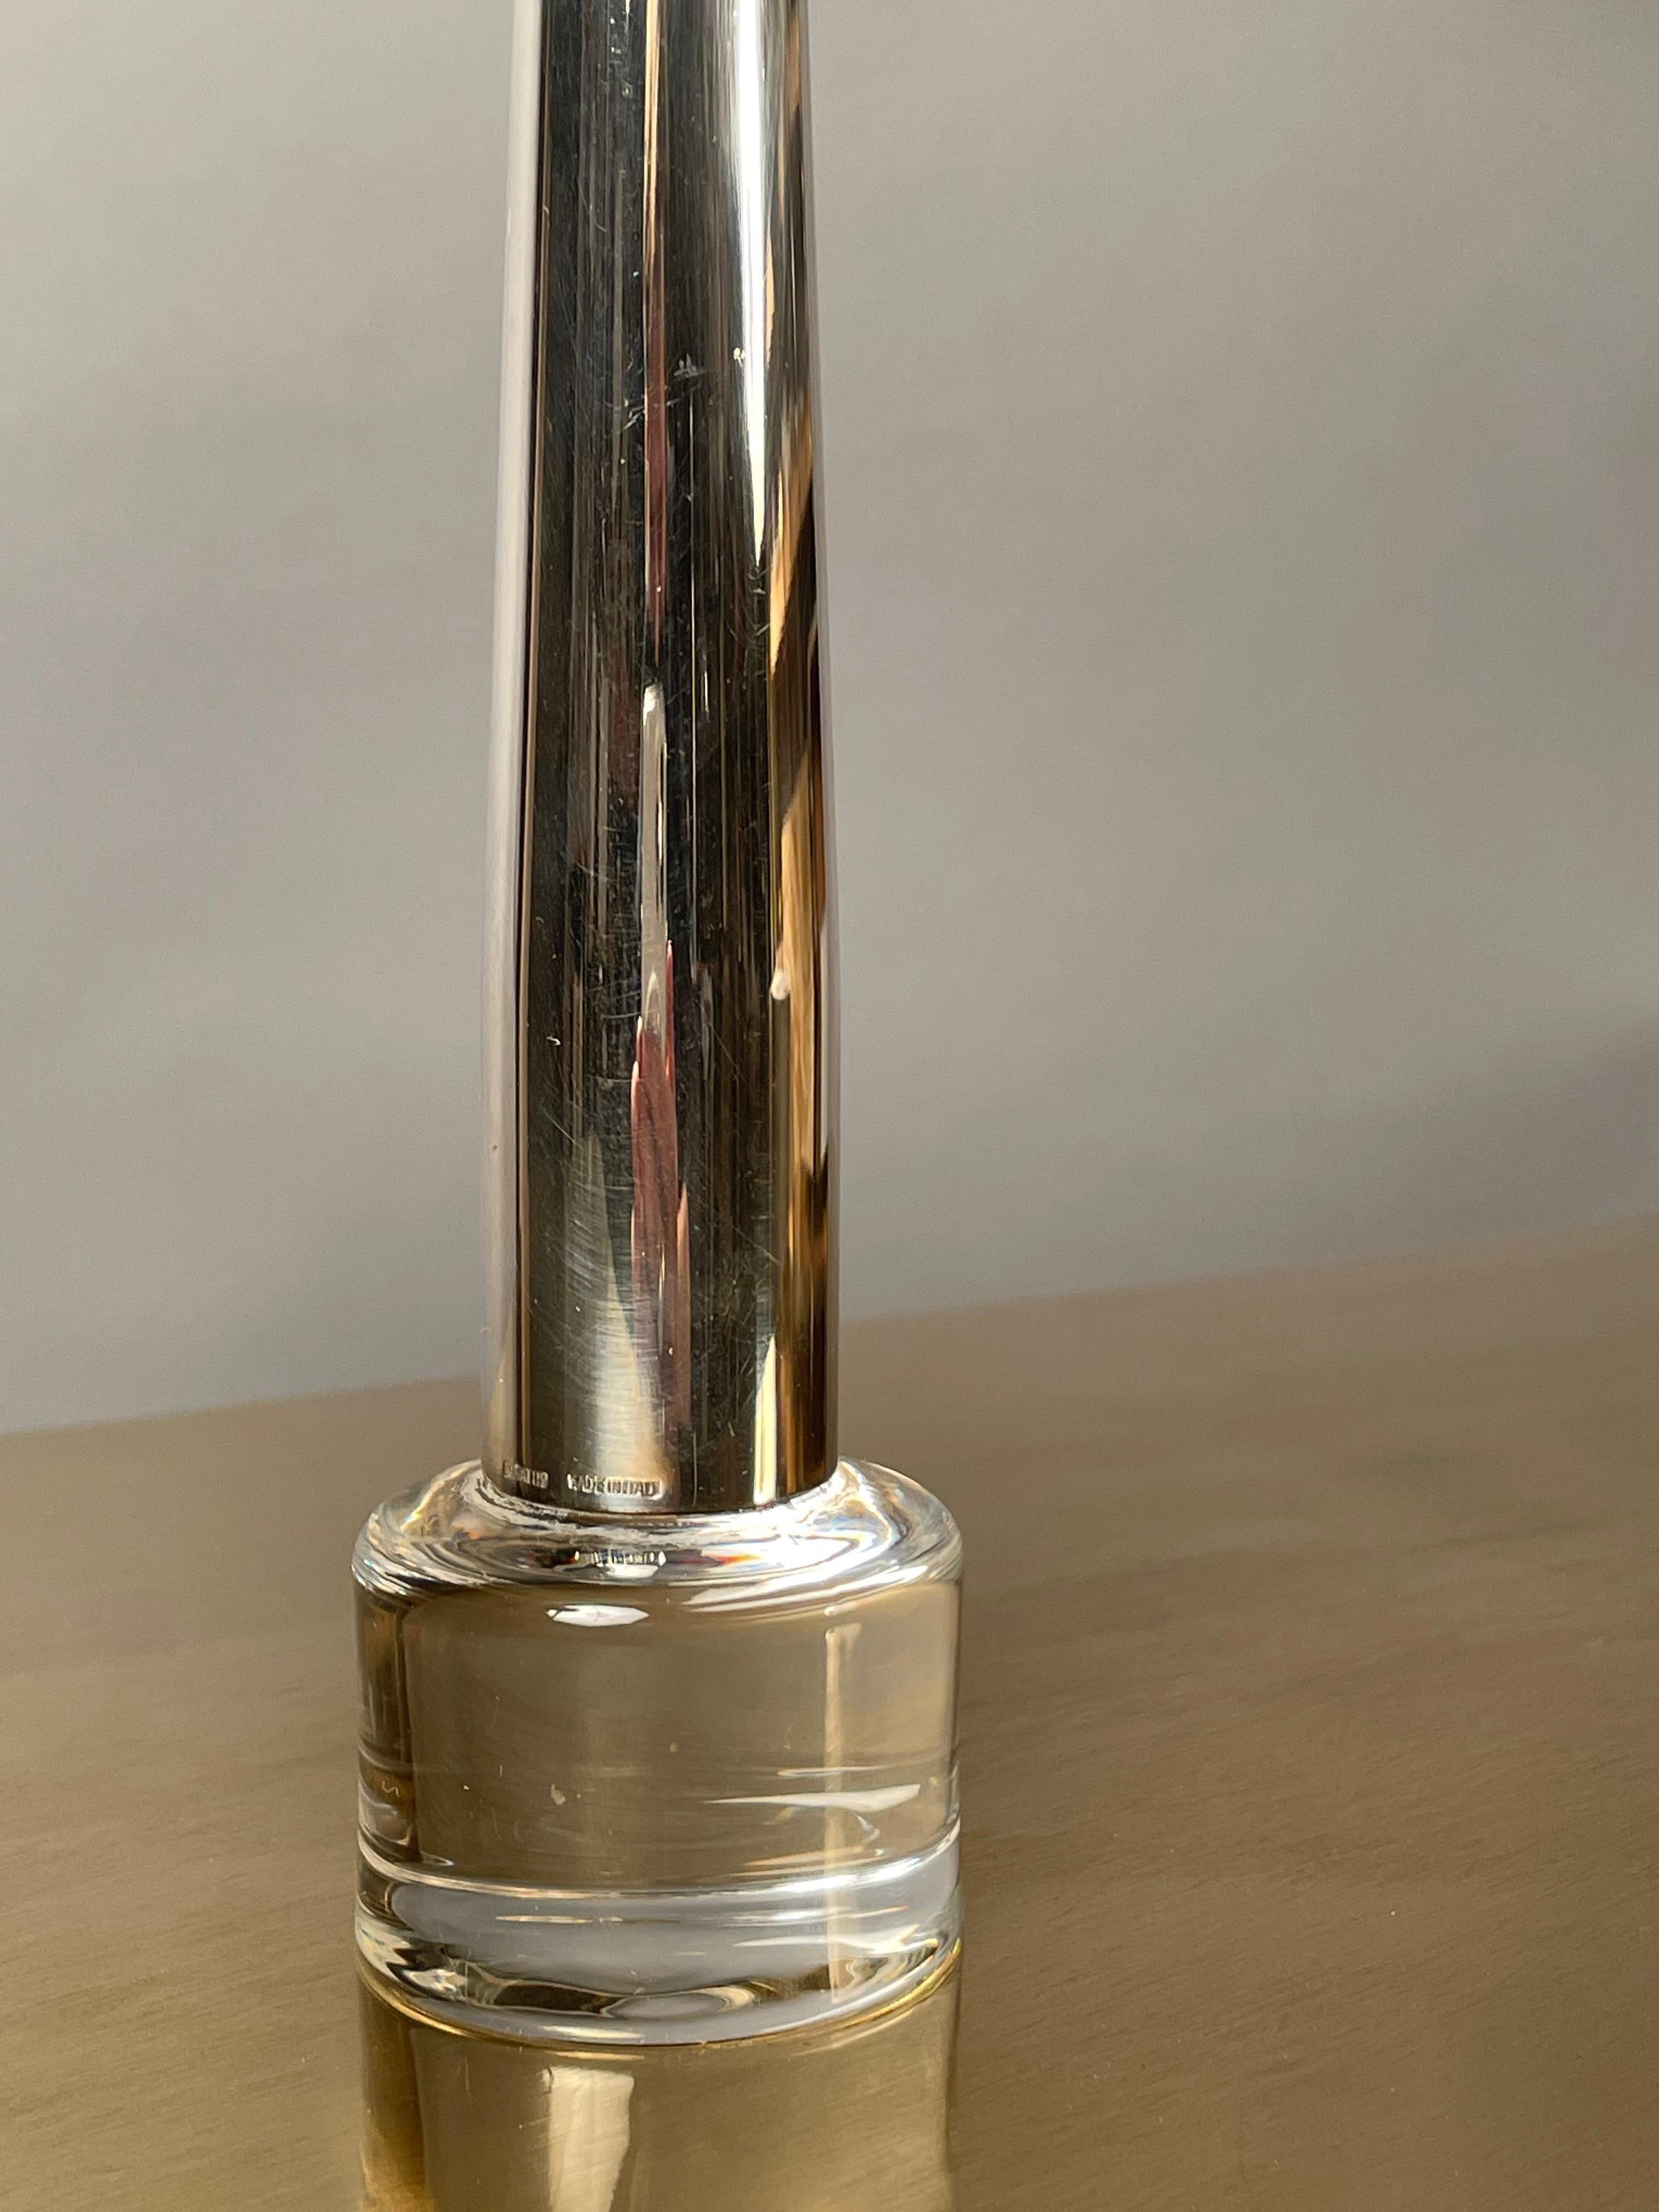 Vase en métal argenté, marqué SABATTINI, fabriqué en Italie. 
Modèle : Cardinale.